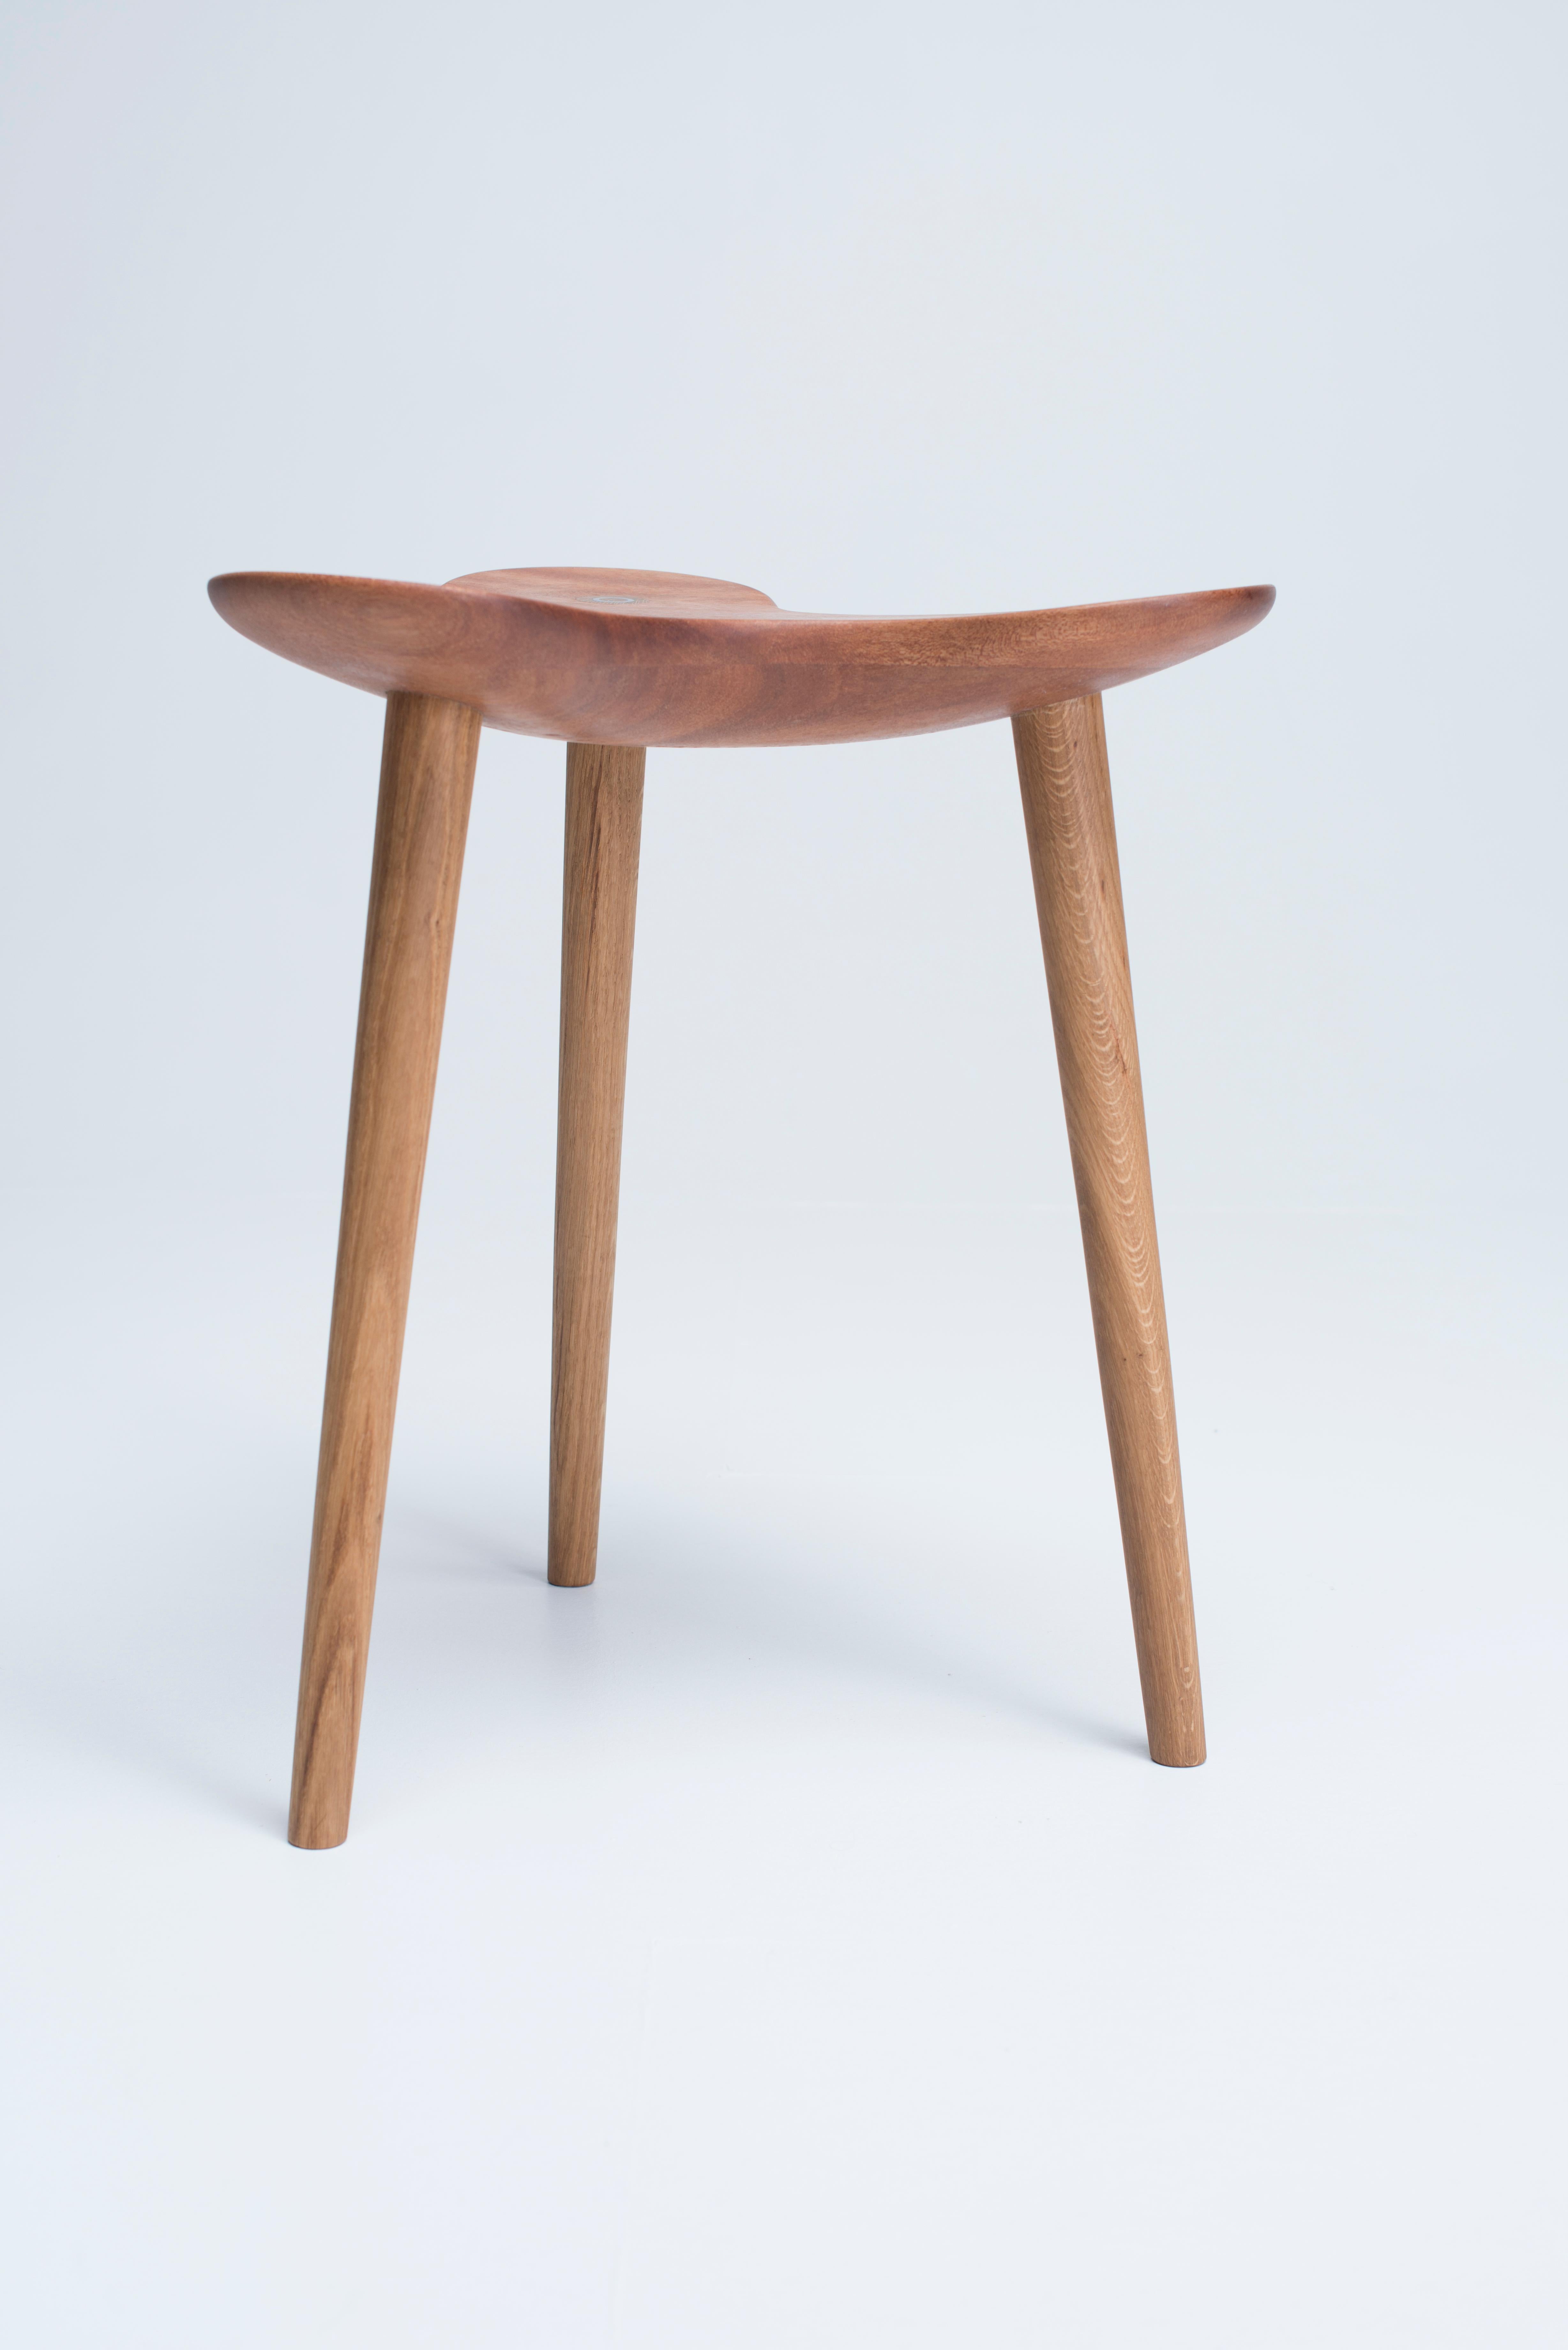 Omera est un tabouret en bois empilable conçu par Philipp von Hase en collaboration avec Timothee Boyat. La première série de trente tabourets Omera a été fabriquée par les designers eux-mêmes en France et en Norvège. Les tabourets sont désormais